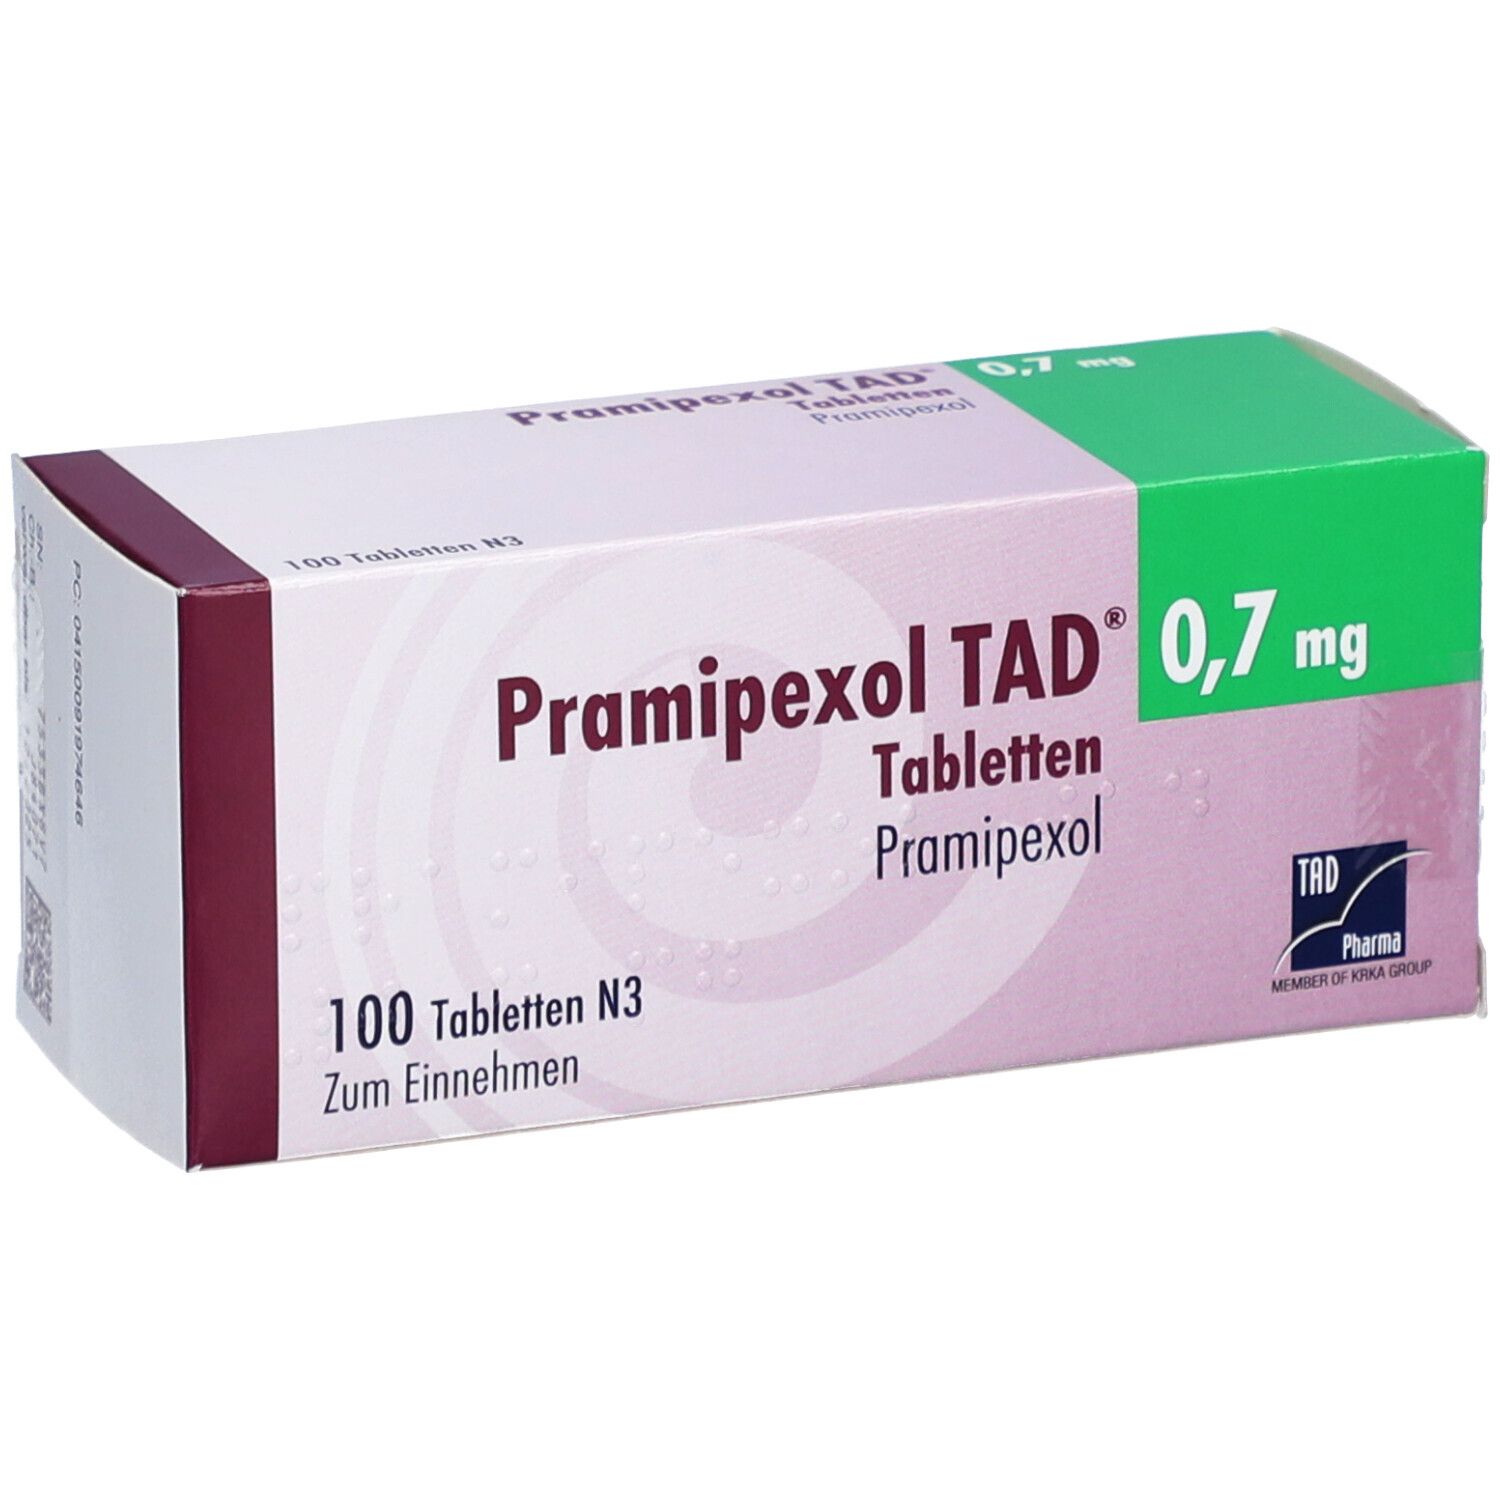 Pramipexol TAD® 0,7 mg